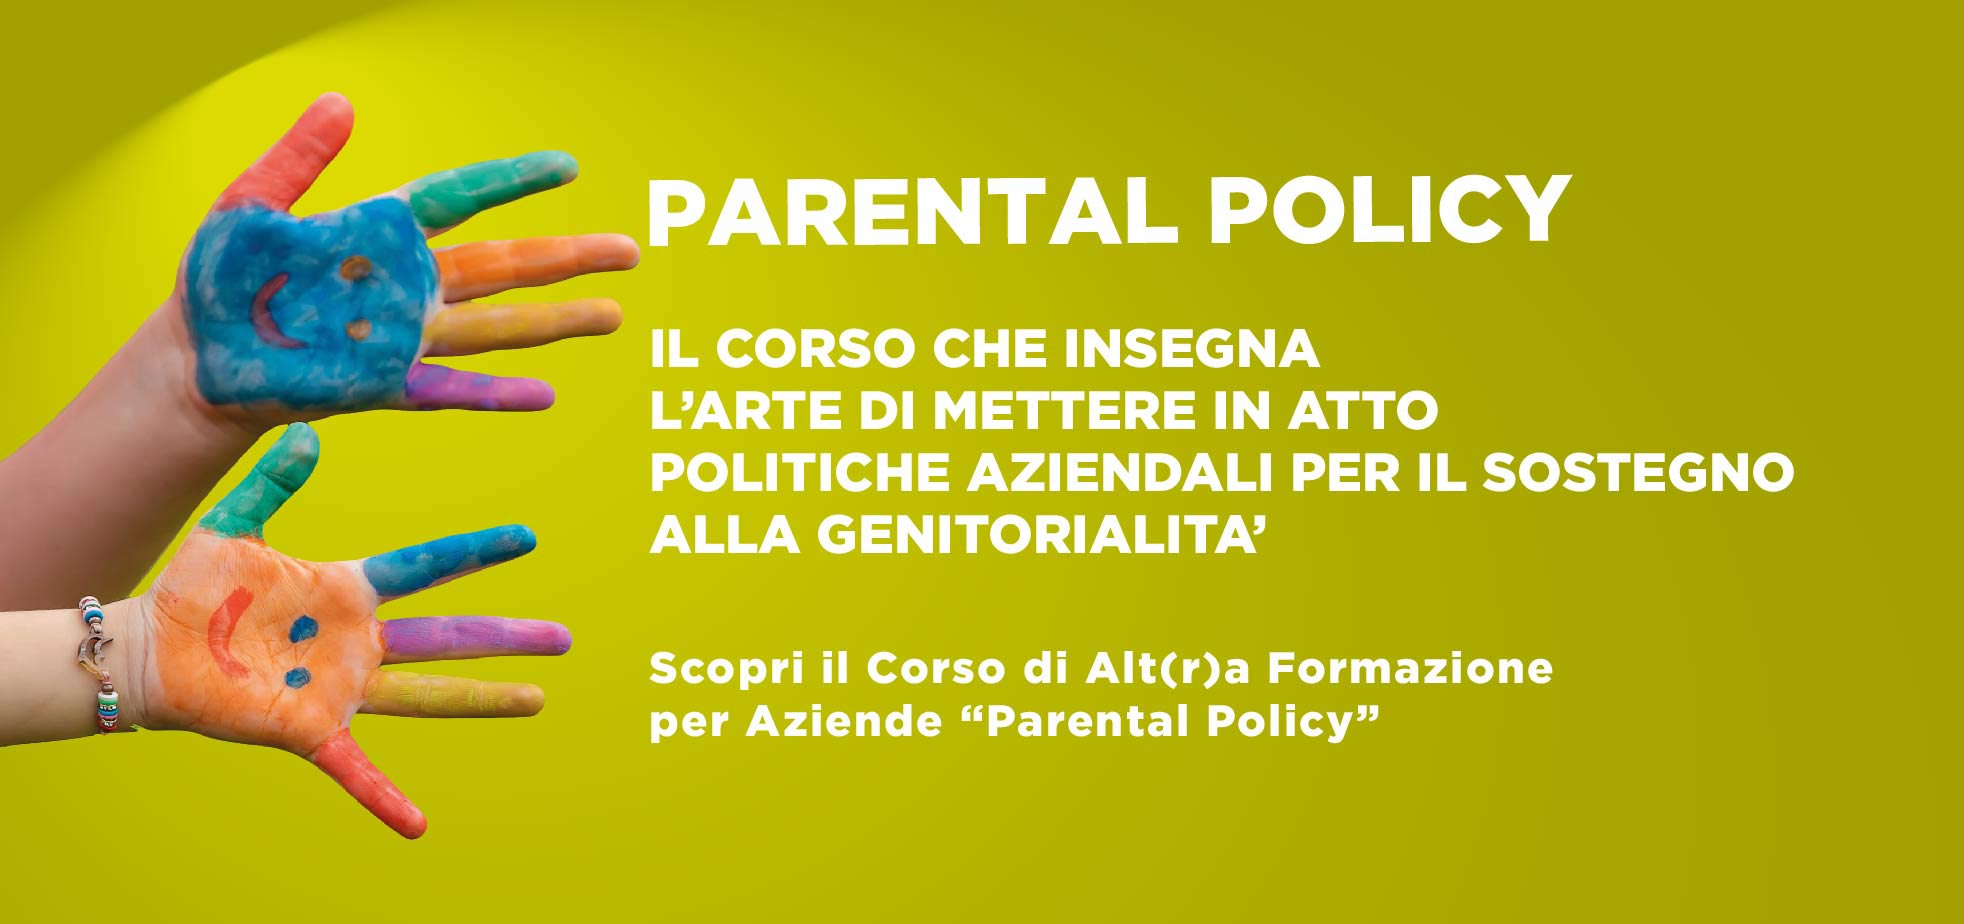 Corso aziendale "Parental Policy" sulla genitorialità